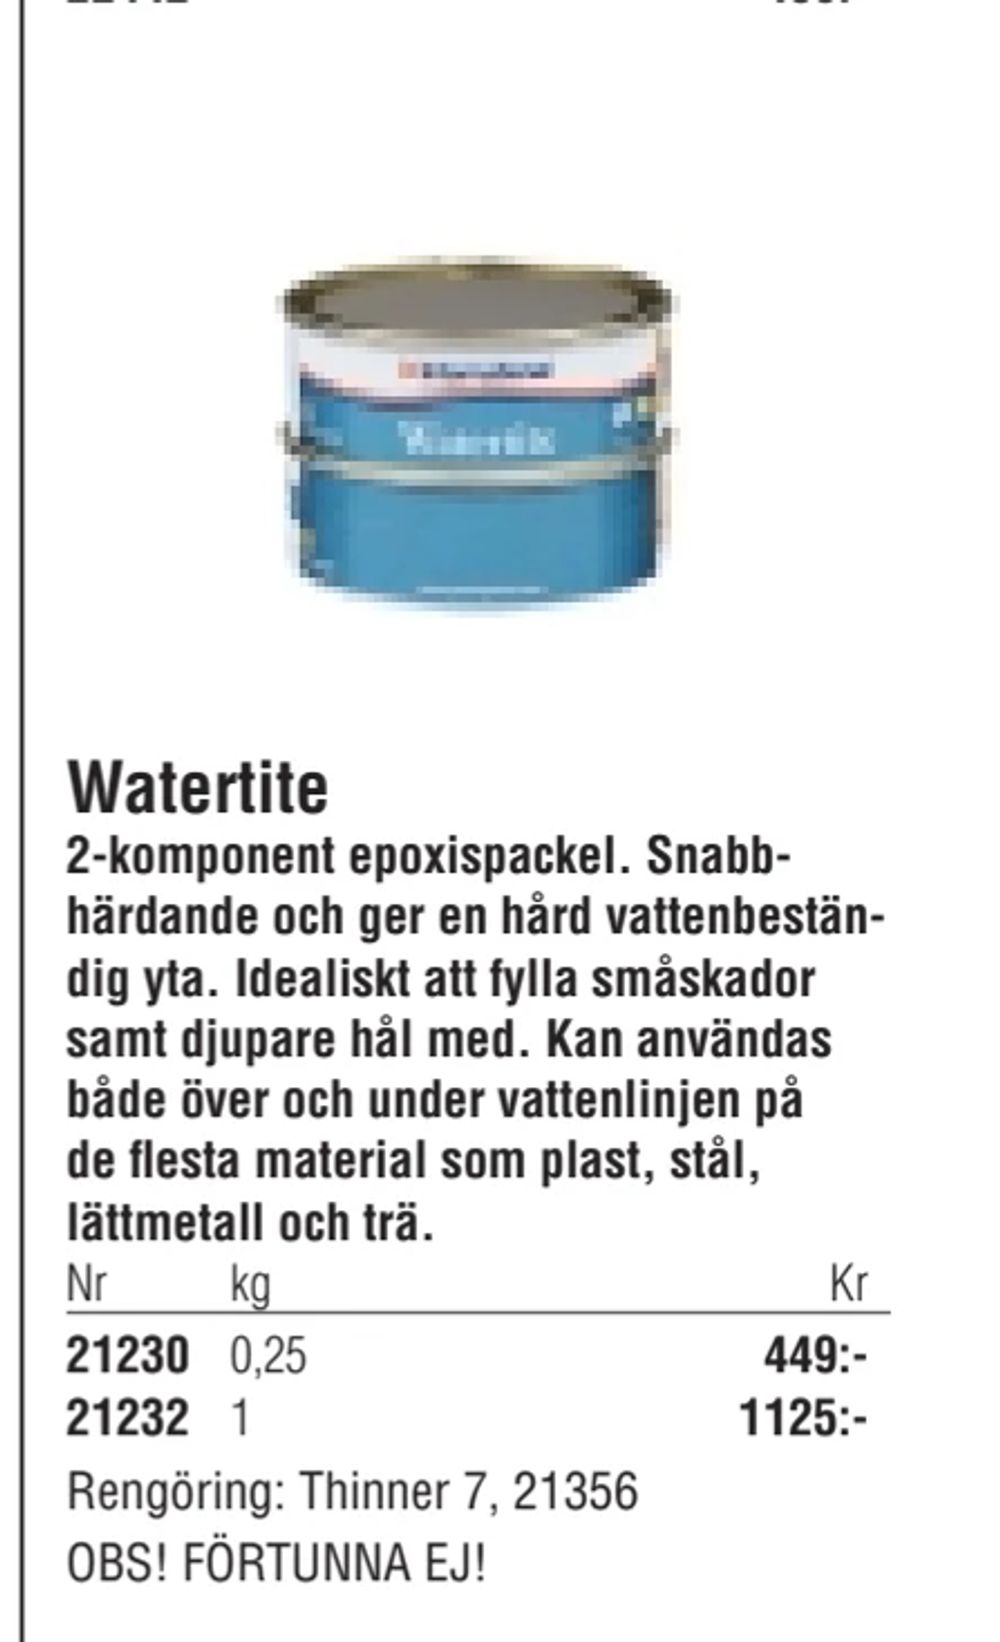 Erbjudanden på Watertite från Erlandsons Brygga för 449 kr